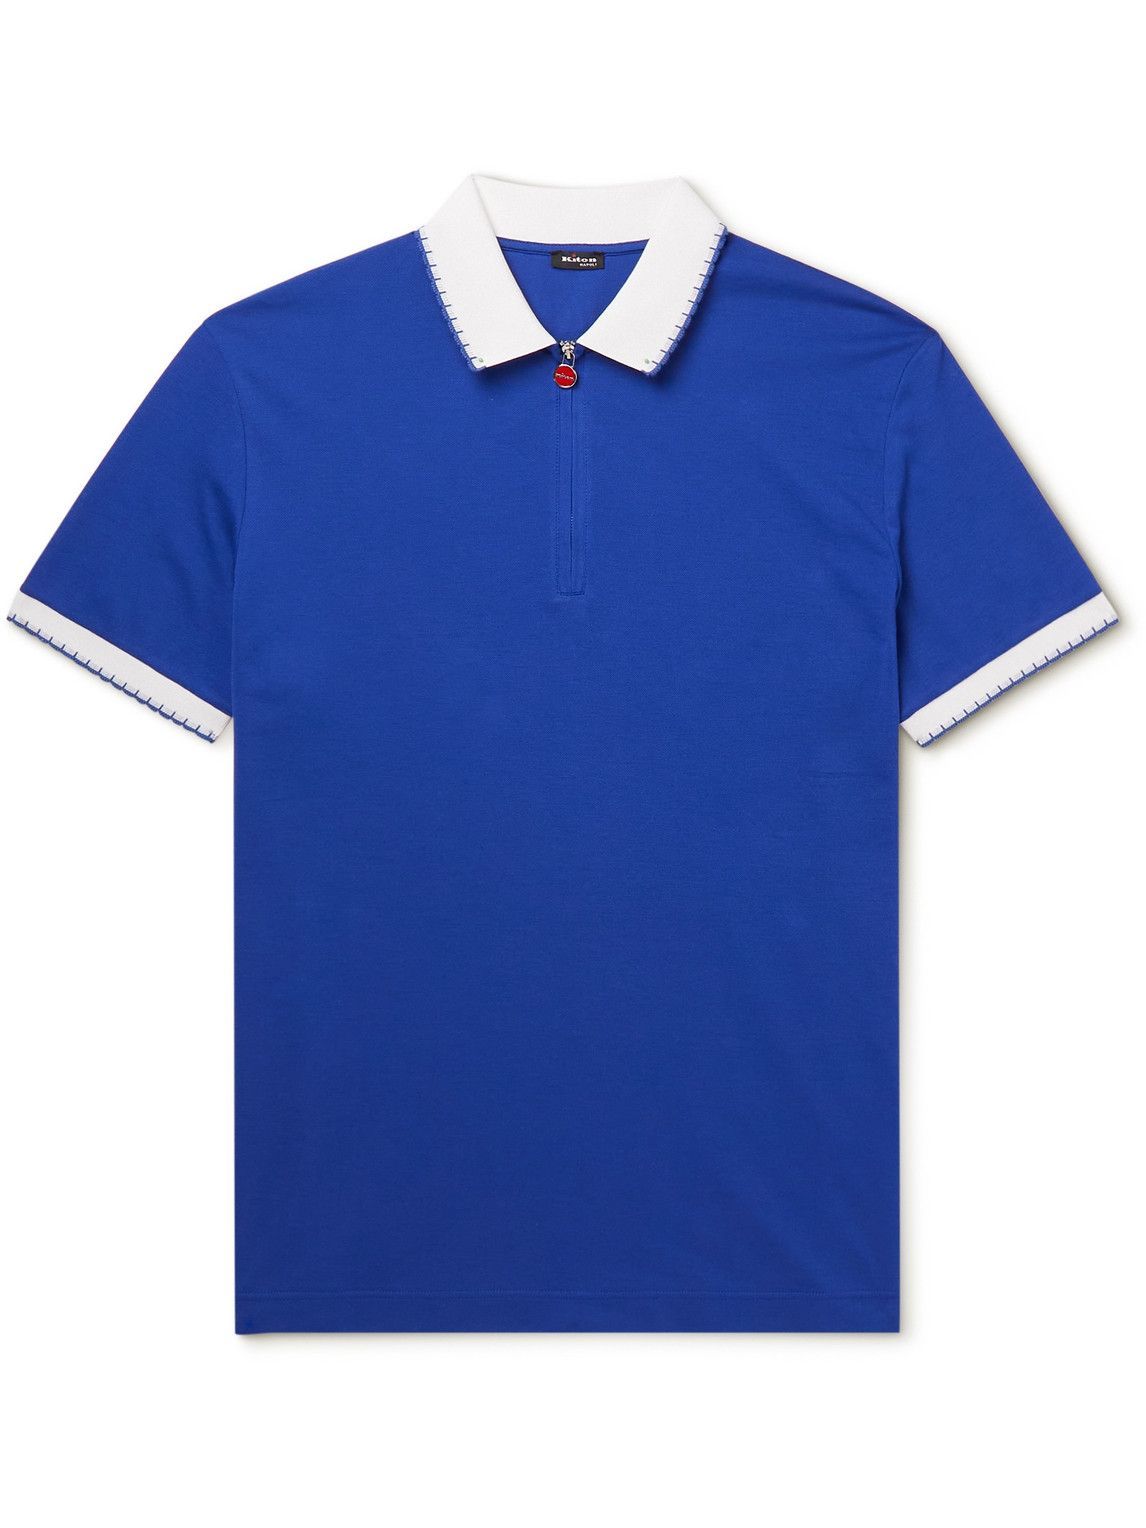 Kiton - Logo-Embroidered Cotton-Piqué Polo Shirt - Blue Kiton